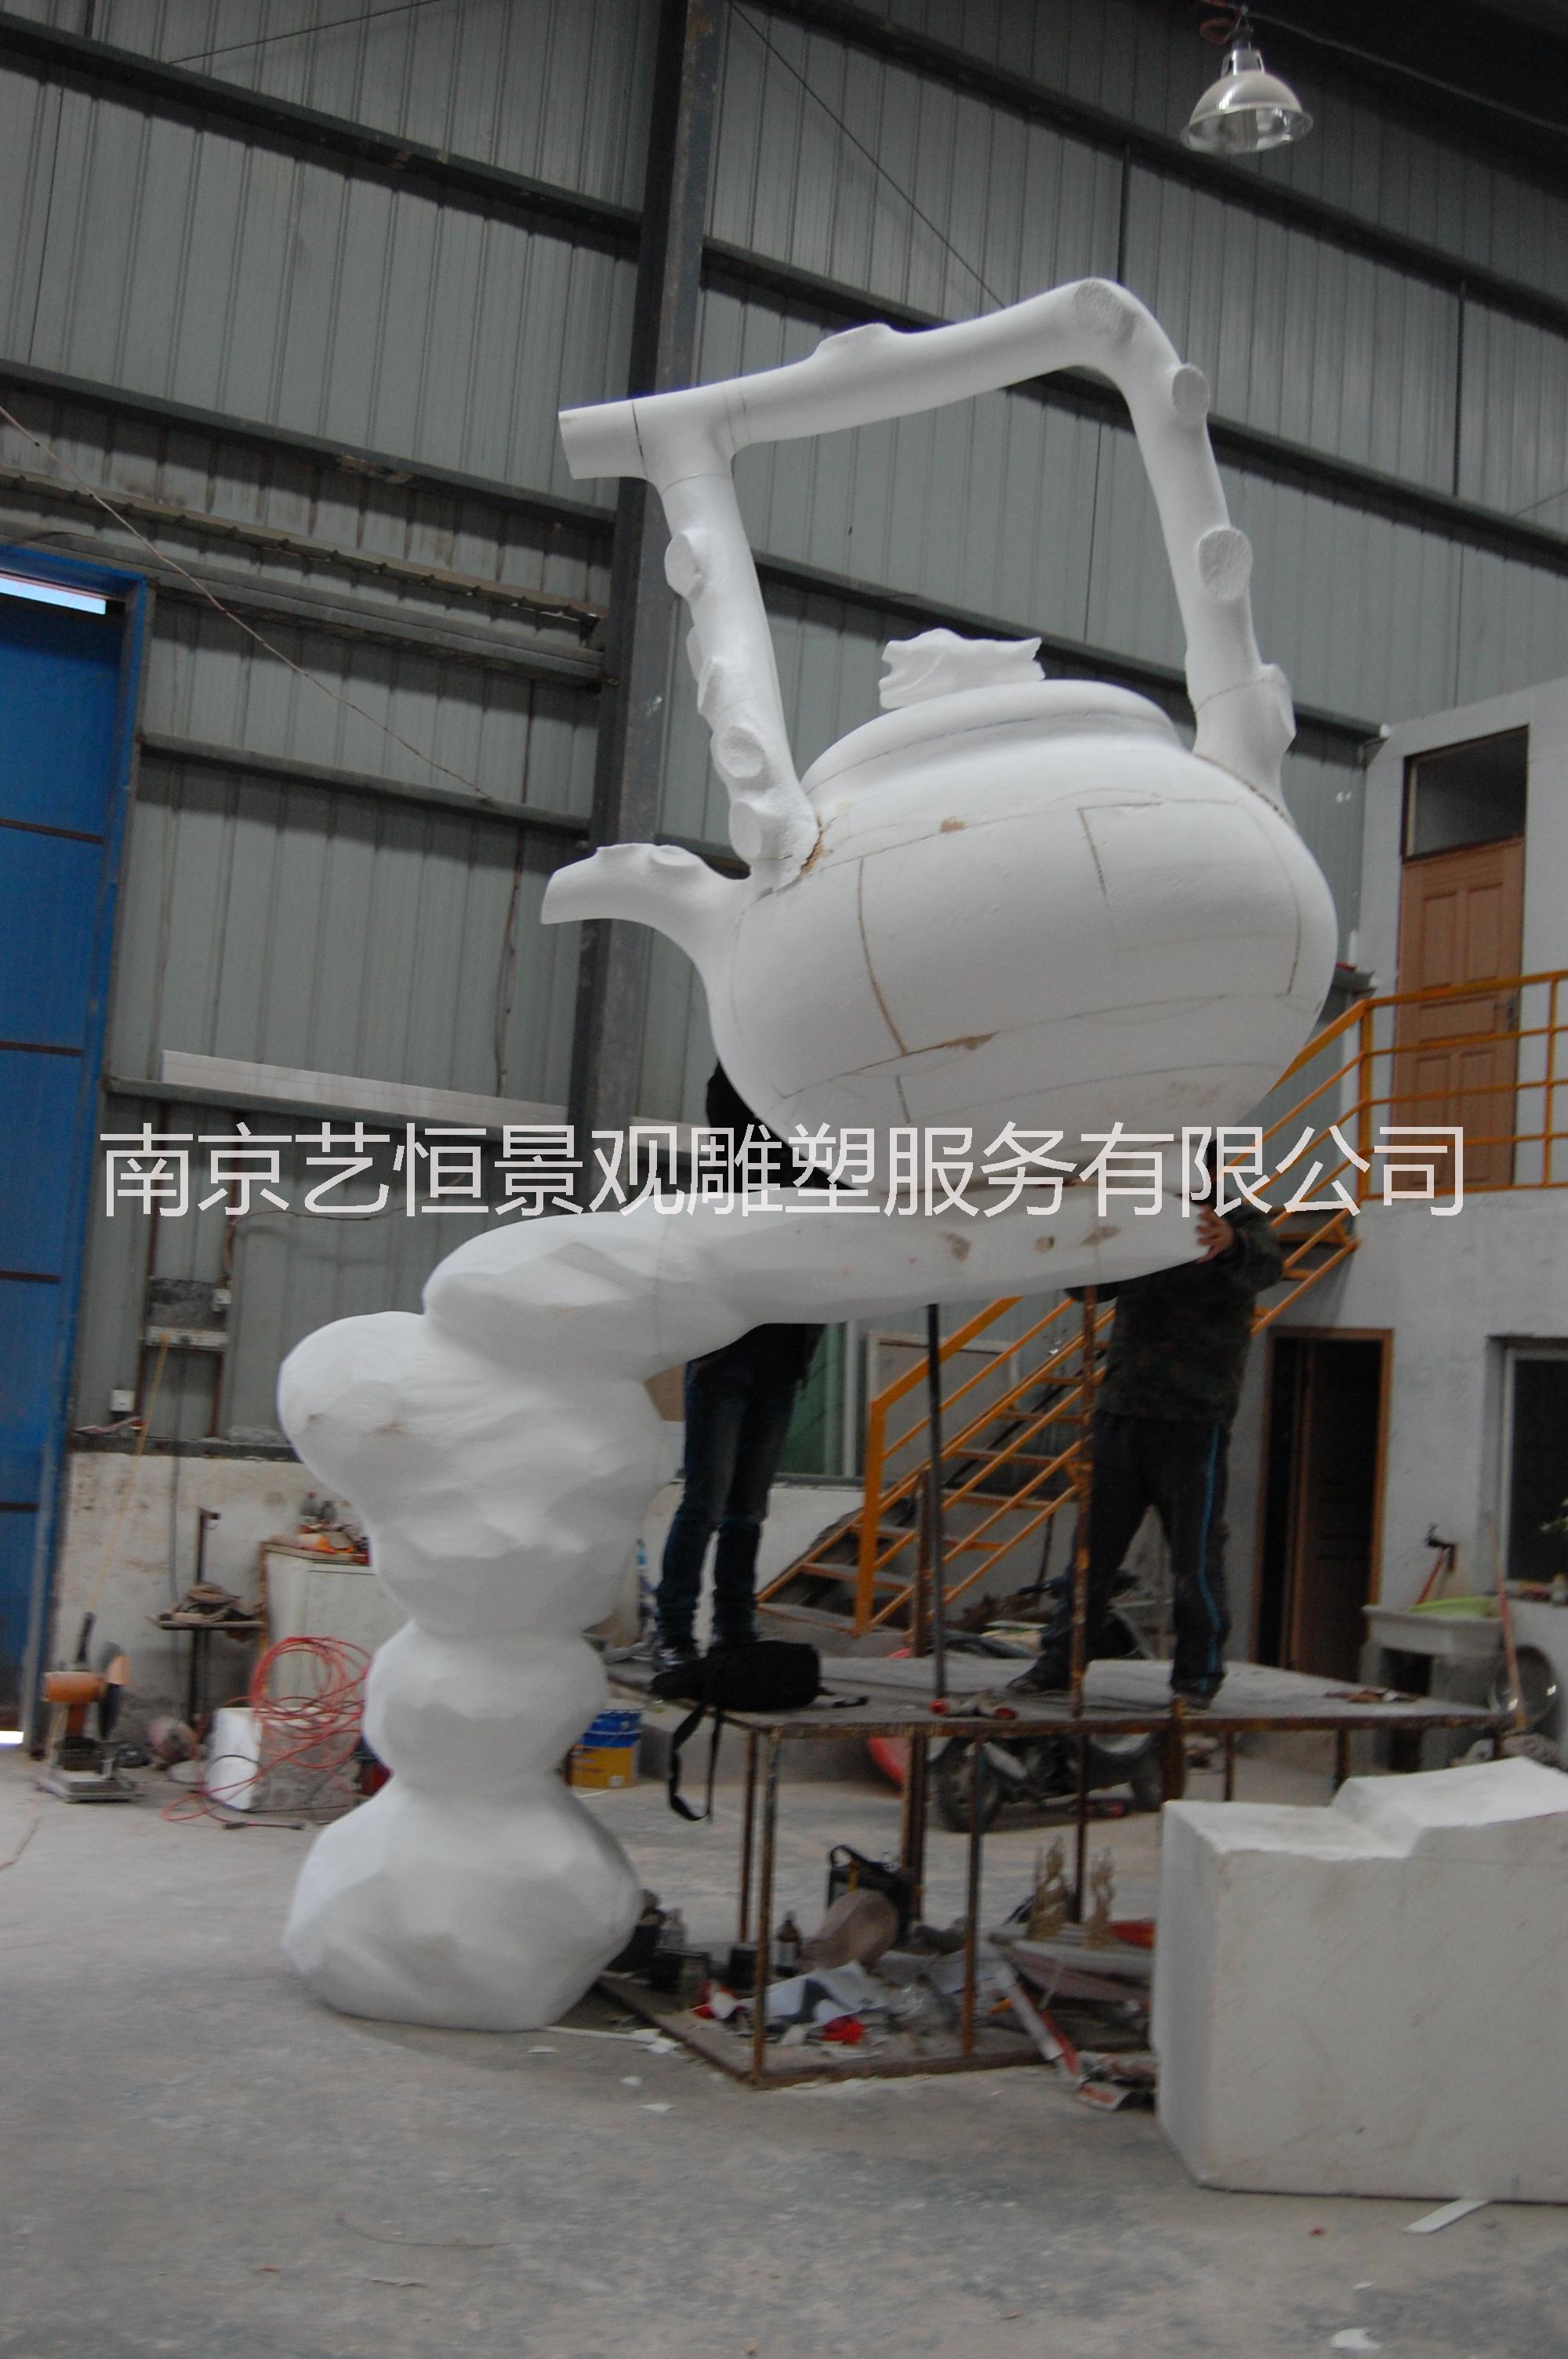 南京泡沫雕塑厂生产泡沫雕塑泡沫模型模型制作卡通泡沫雕塑泡沫制品图片